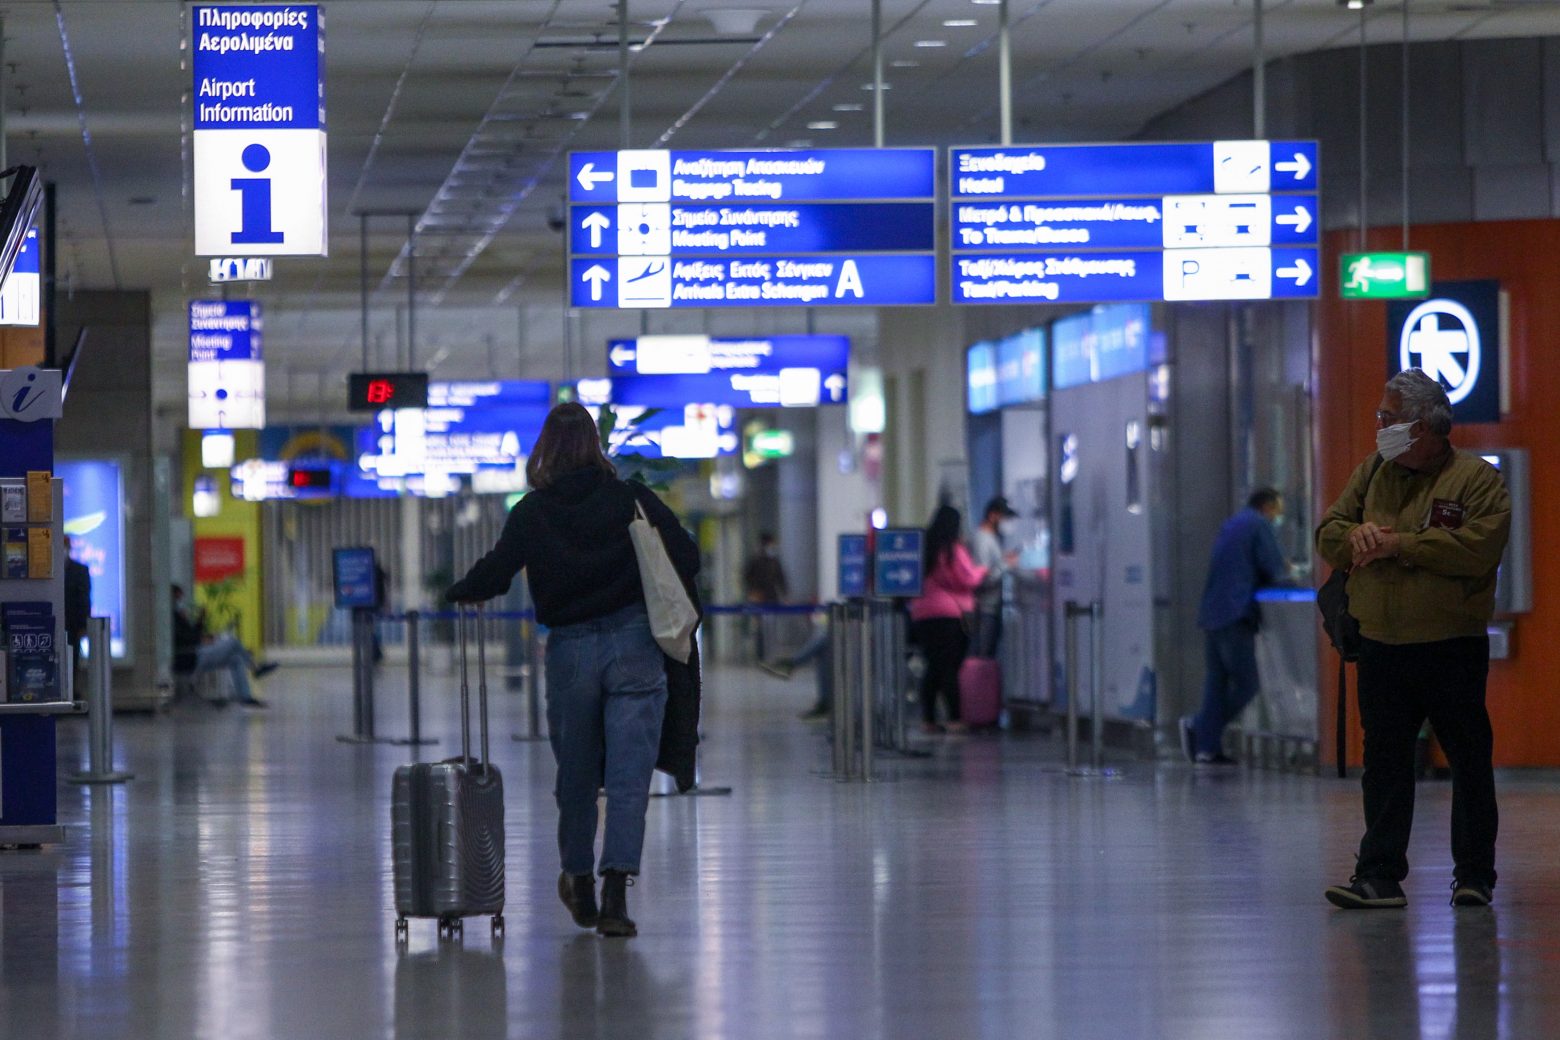 ΝΟΤΑΜ - Τι προβλέπει η νέα ταξιδιωτική οδηγία από την Υπηρεσία Πολιτικής Αεροπορίας